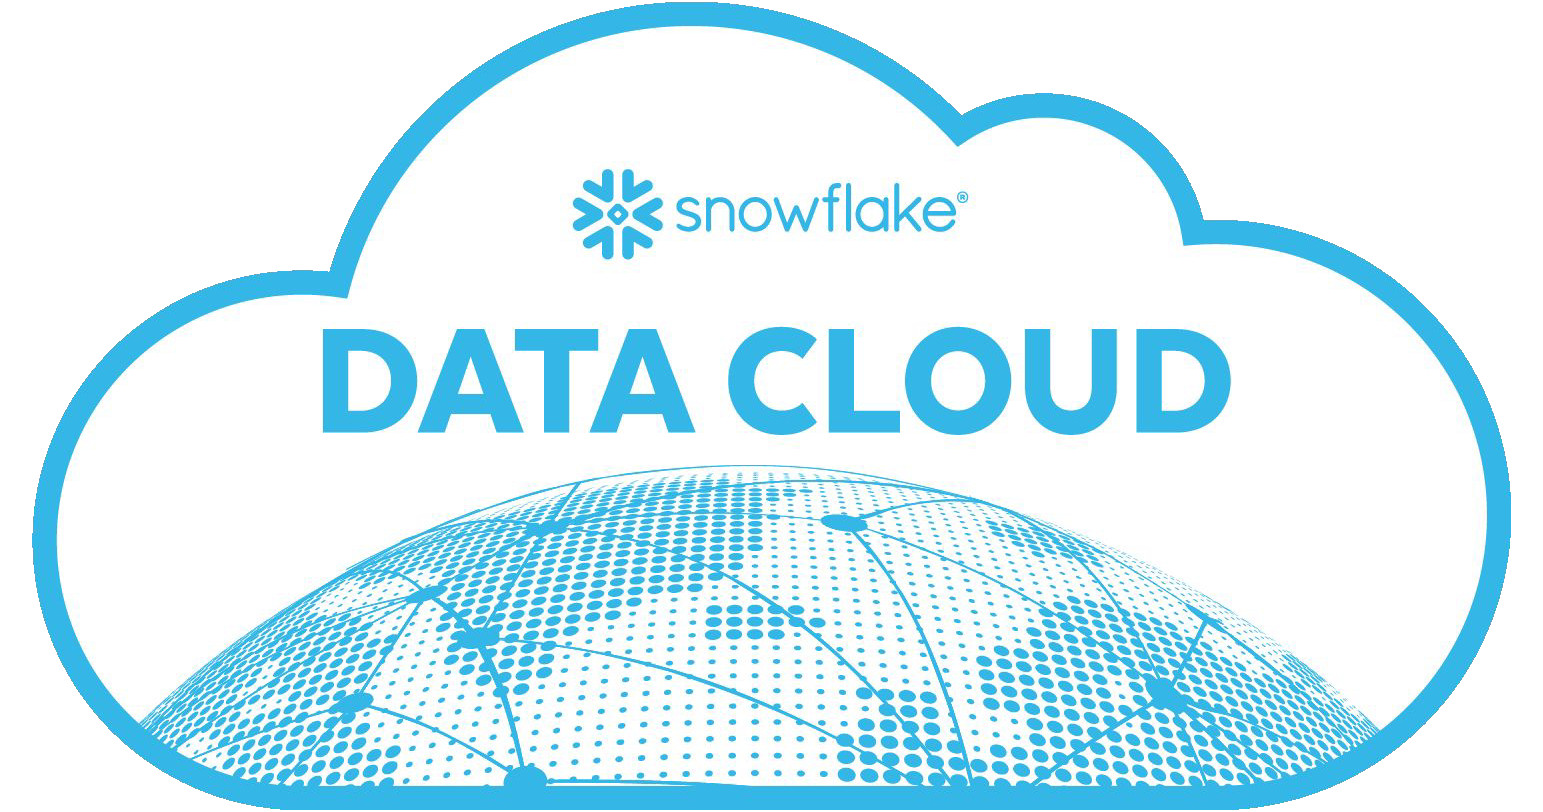 Snowflakeデータマーケットプレイスが目指すもの　クラウドDWHから他社データ活用、そして自社データ収益化へ